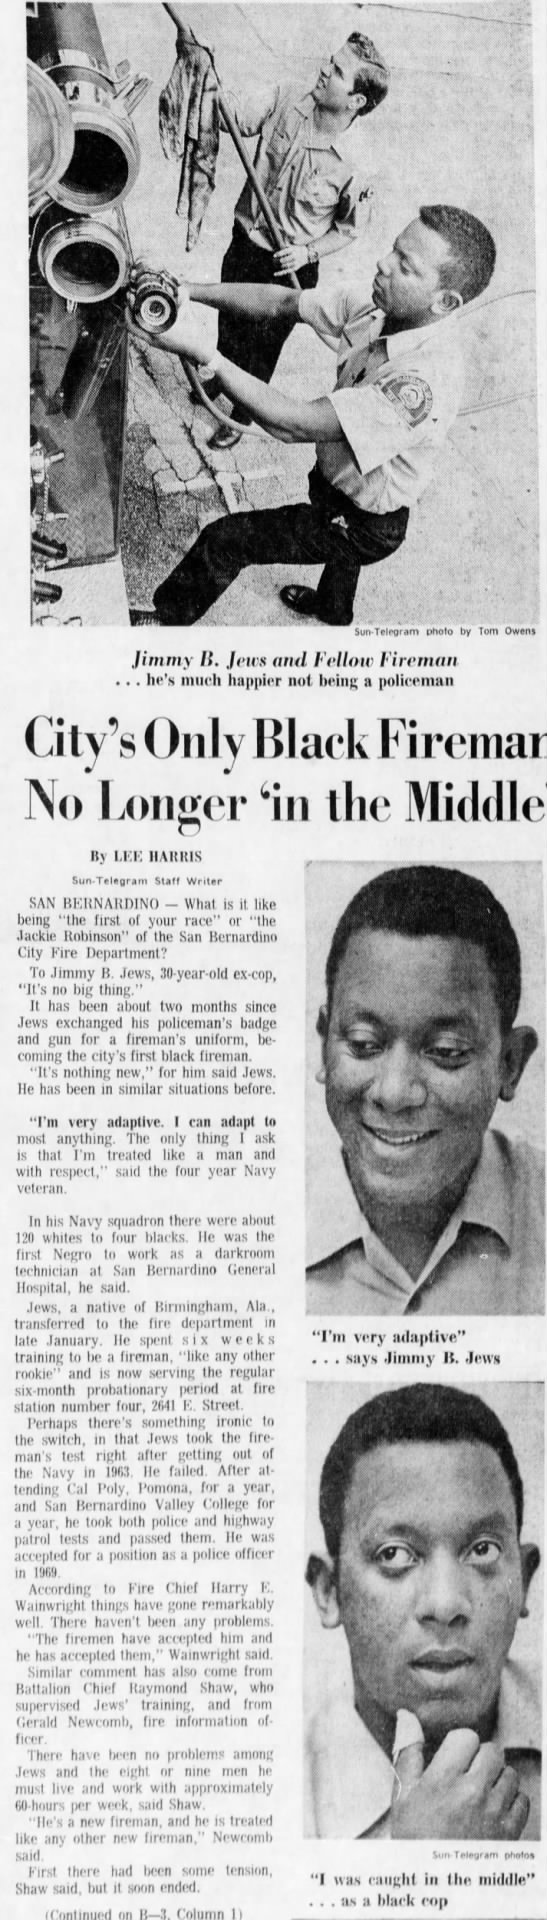 Jimmy Jews First Black Fireman in San Bernardino - 